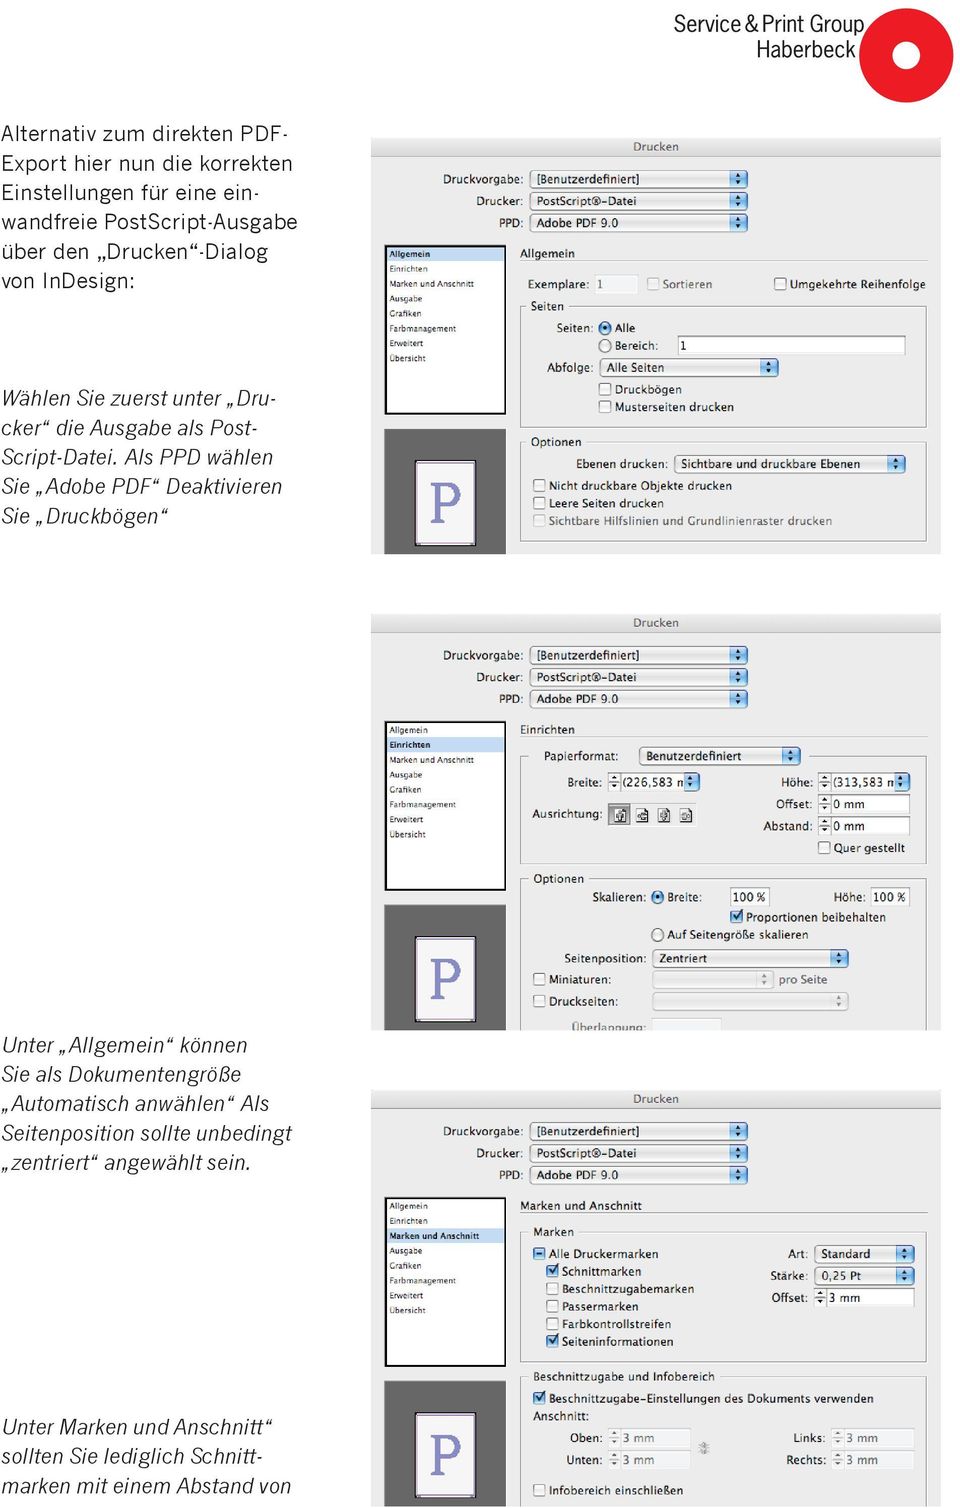 Als PPD wählen Sie Adobe PDF Deaktivieren Sie Druckbögen Unter Allgemein können Sie als Dokumentengröße Automatisch